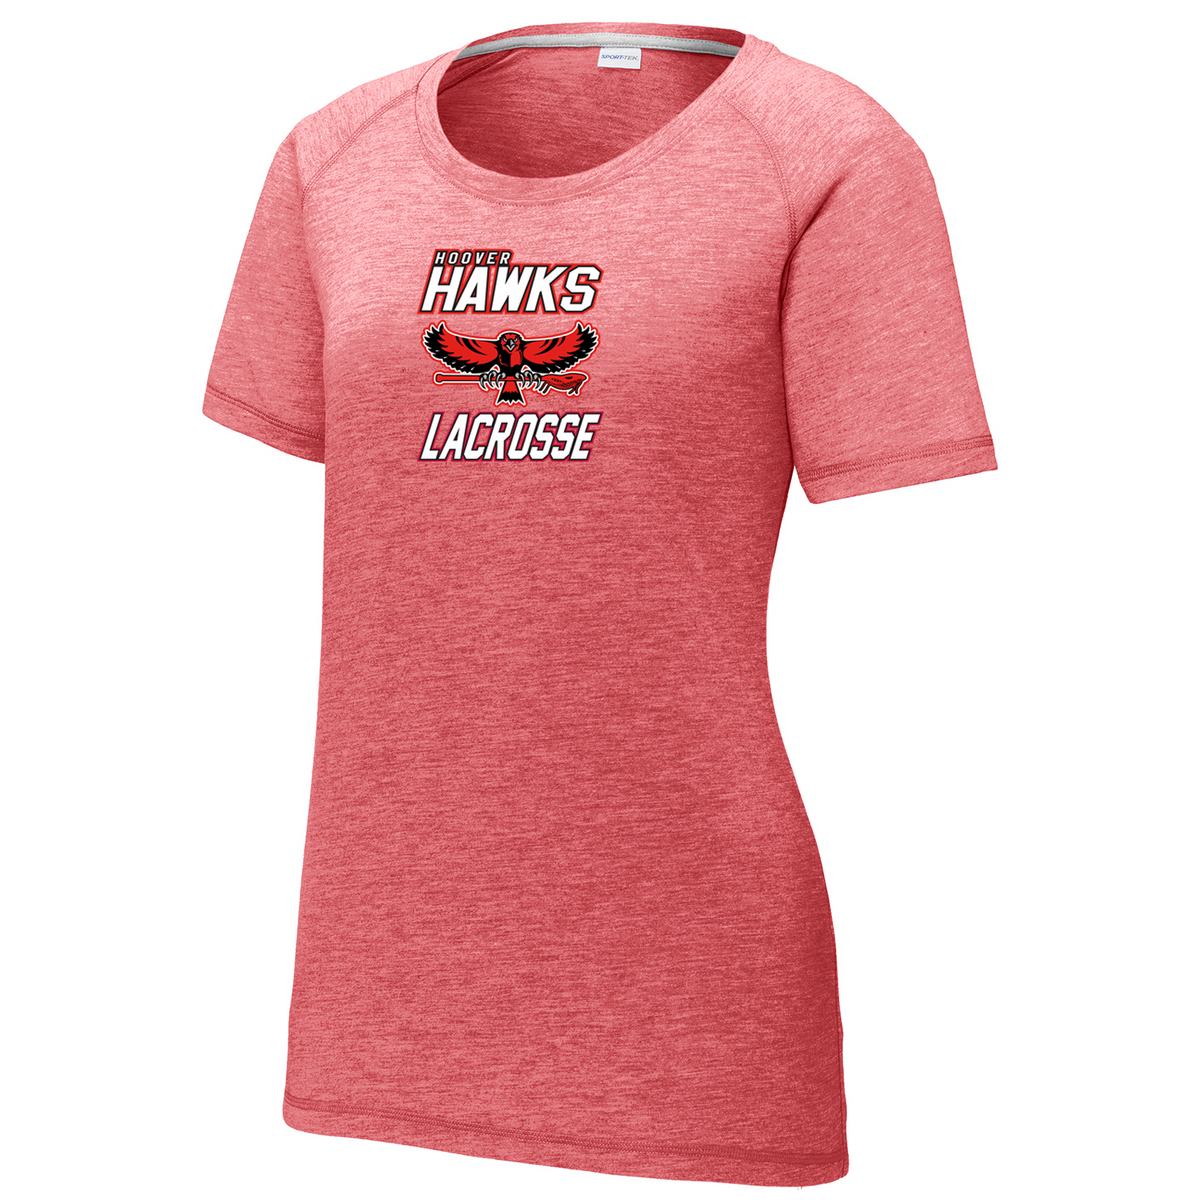 Hawks Lacrosse Women's Raglan CottonTouch